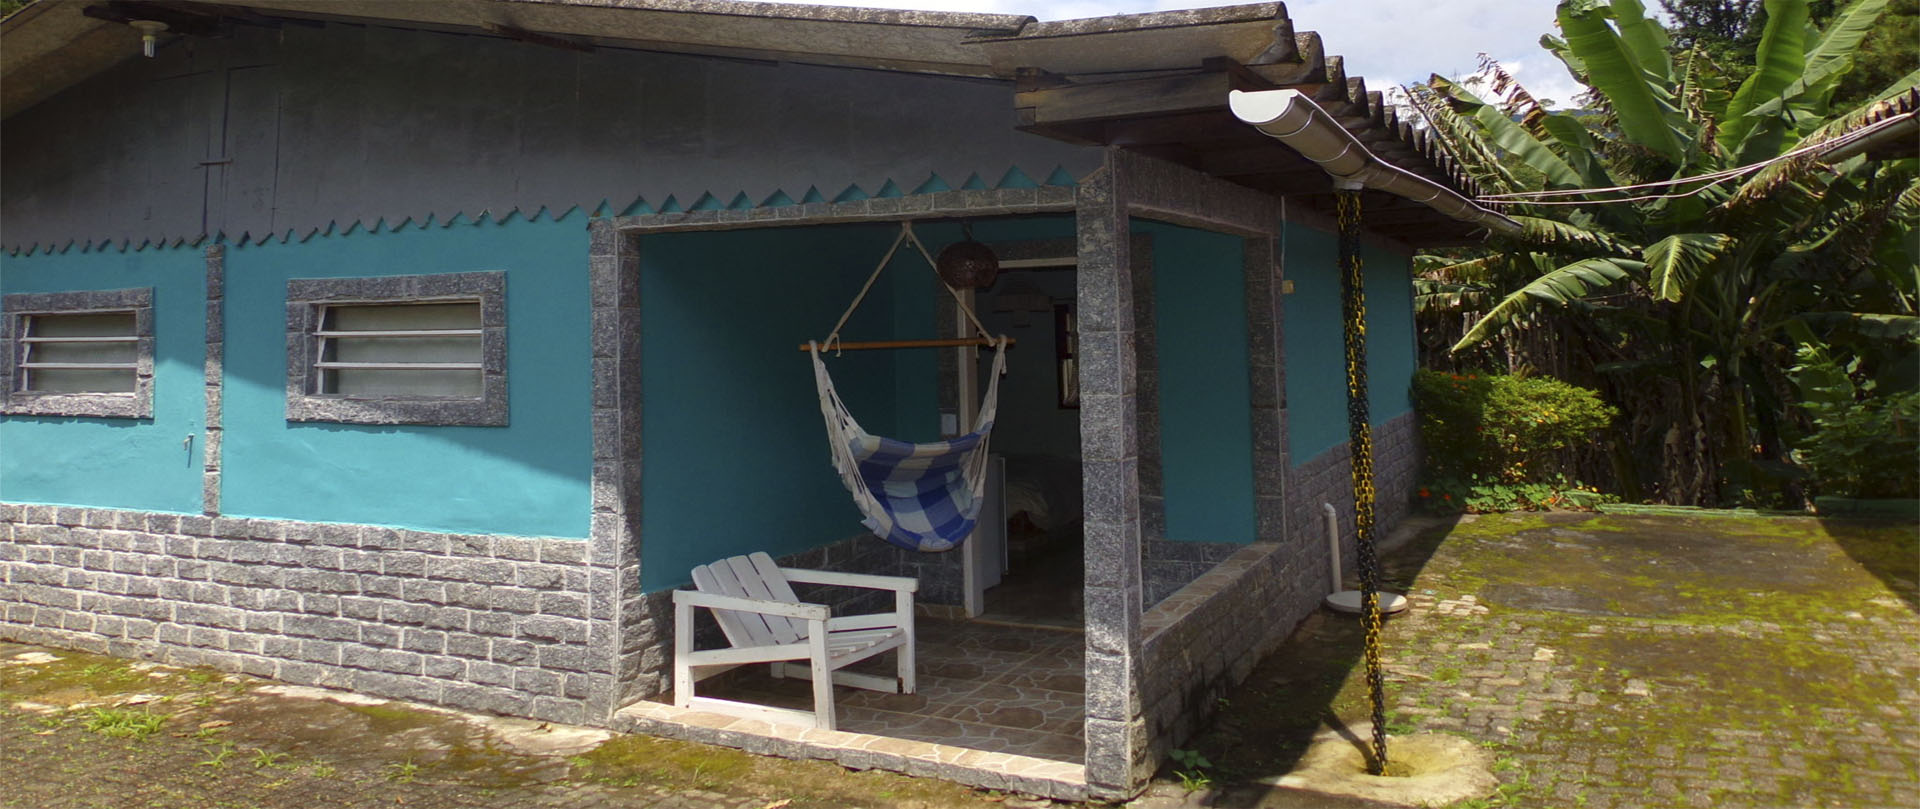 Acomodações - Chalé com mini cozinha (2 pessoas) - Condomínio Shallon Adonai - Visconde de Mauá - RJ